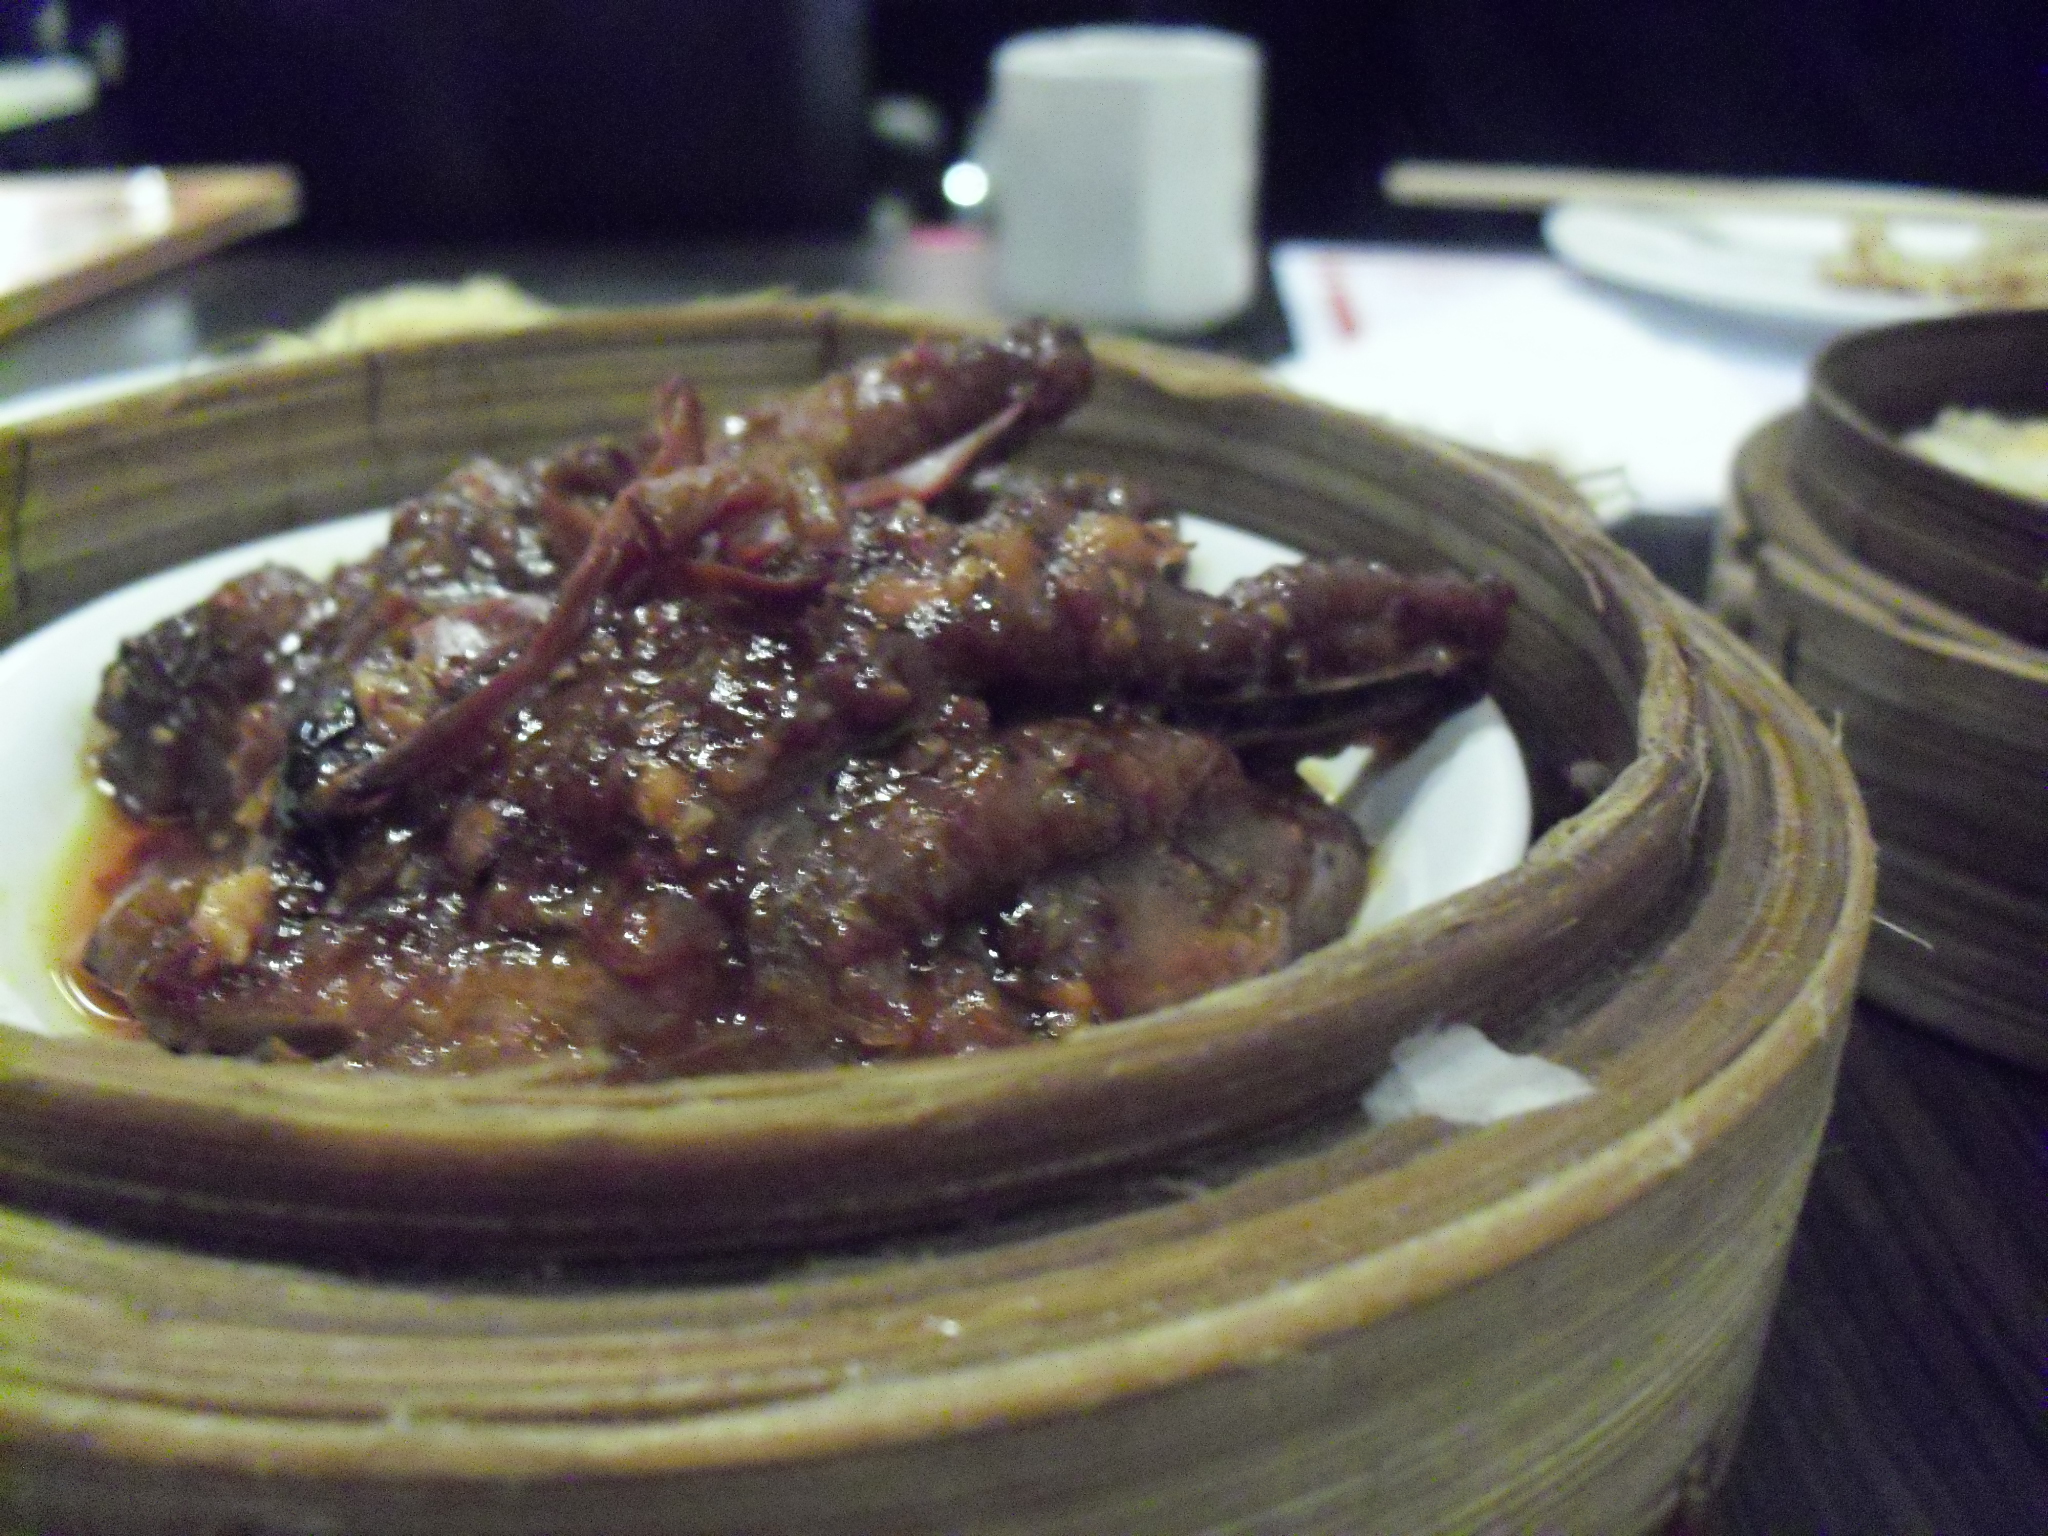 Chinese Food Cerita Soal Makanan Dari Yang Enak Sampe Yang Enak